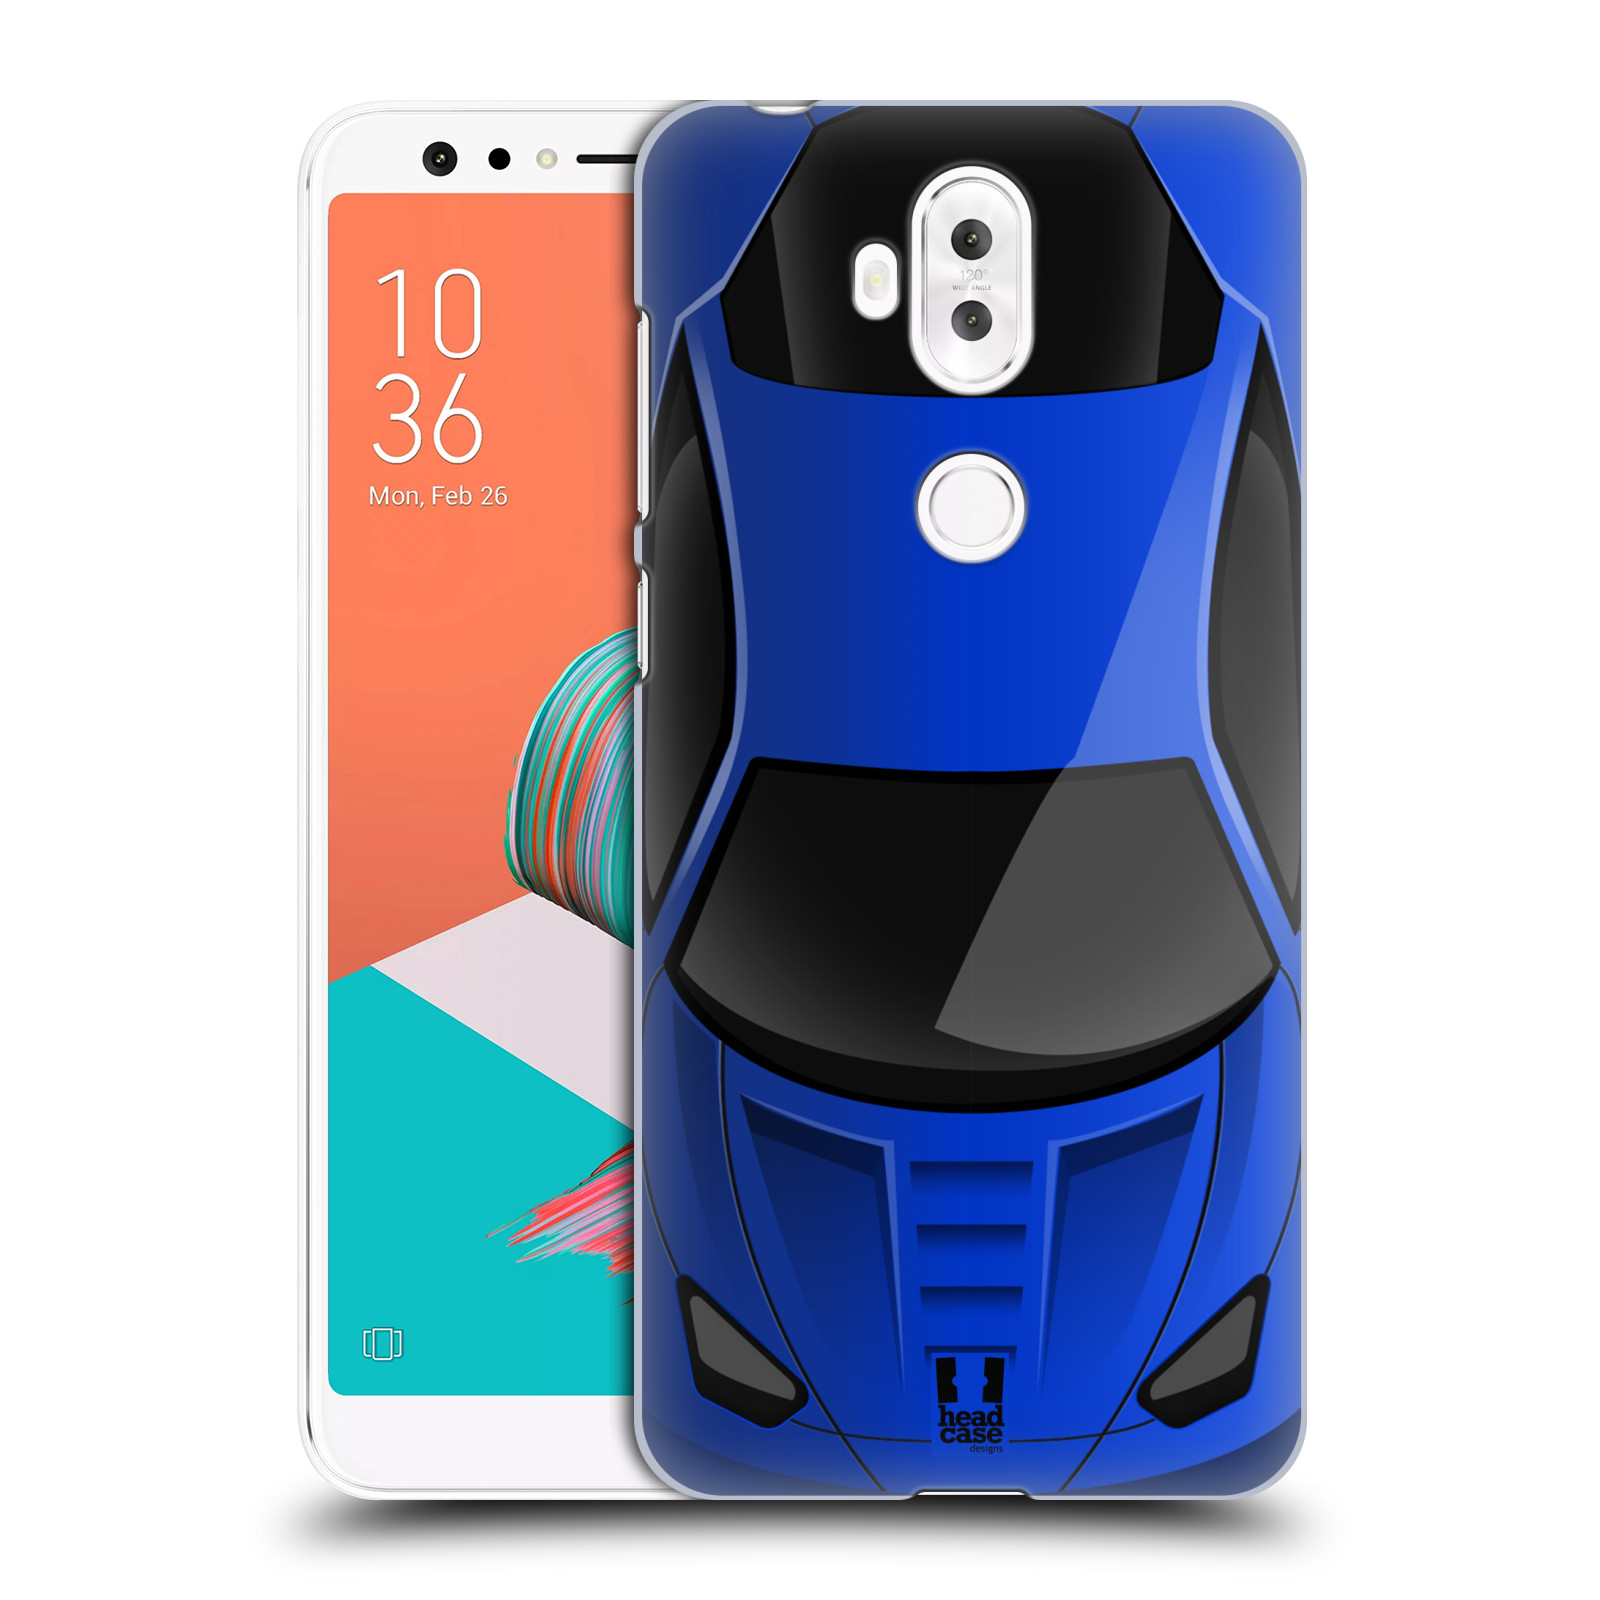 HEAD CASE plastový obal na mobil Asus Zenfone 5 LITE ZC600KL vzor Auto horní pohled modrá